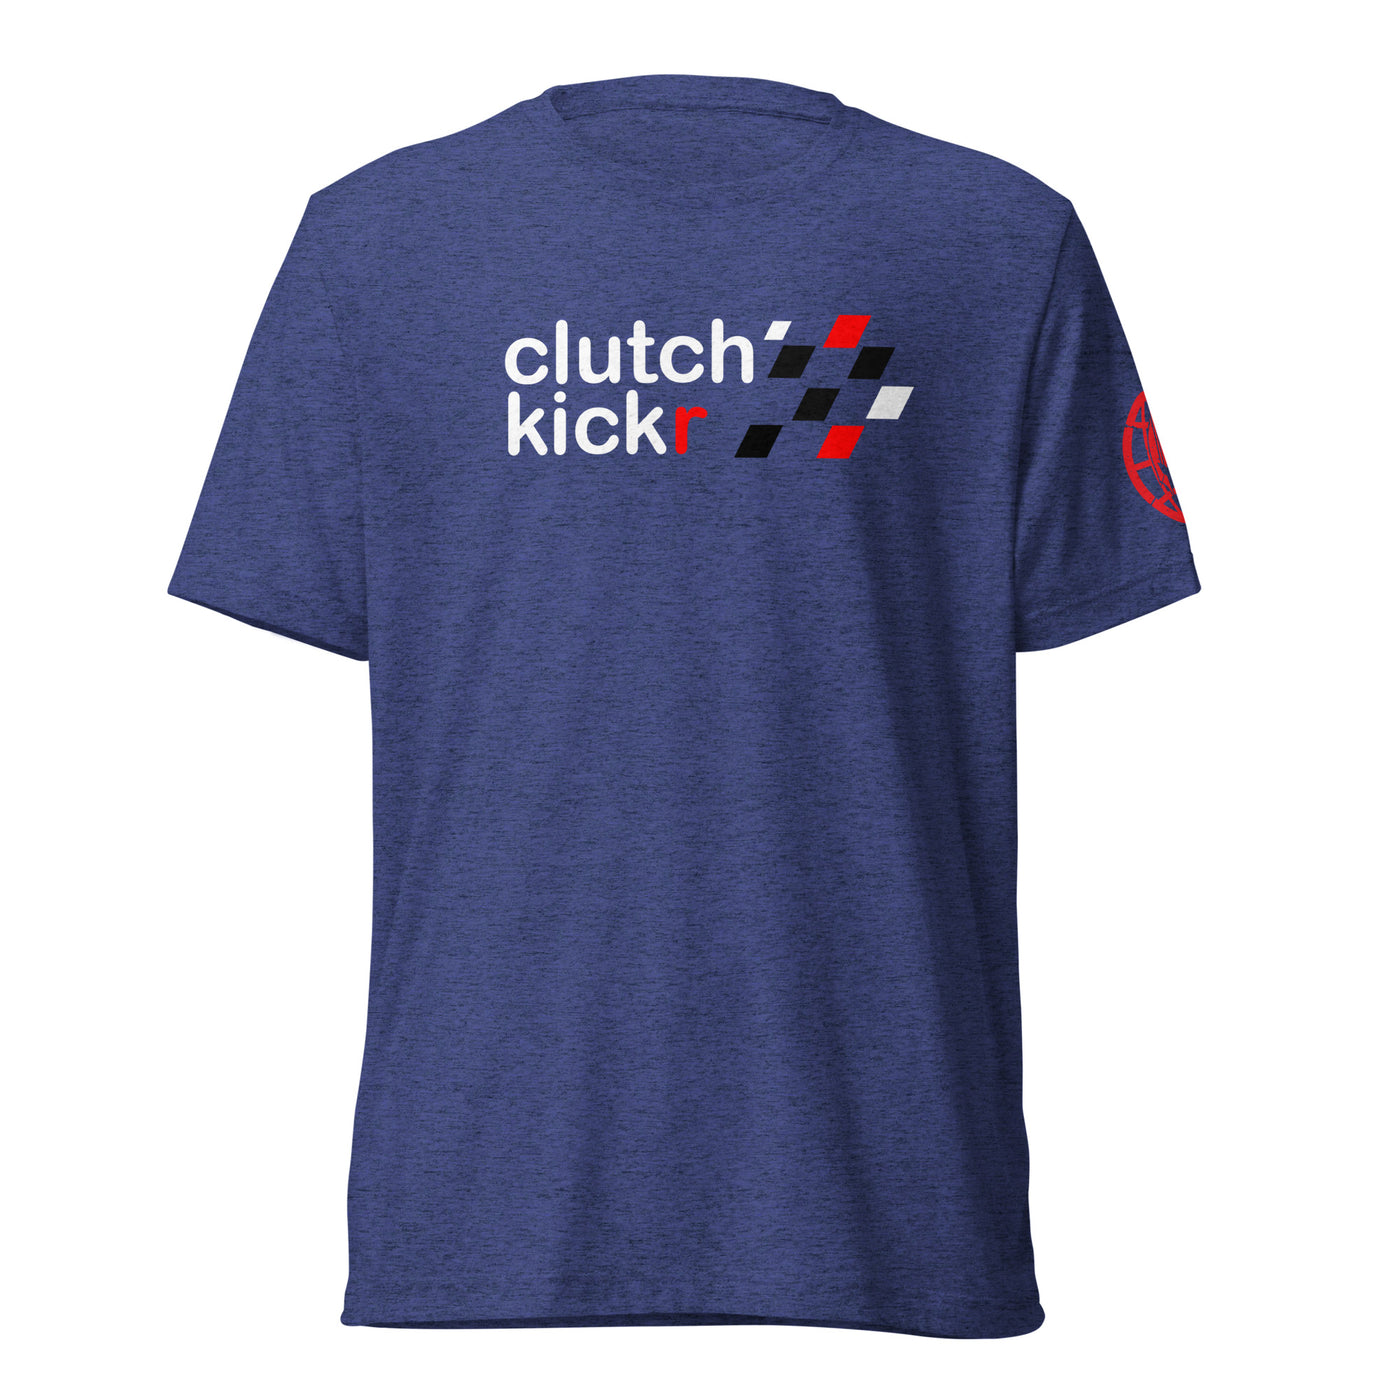 Clutch Kickr